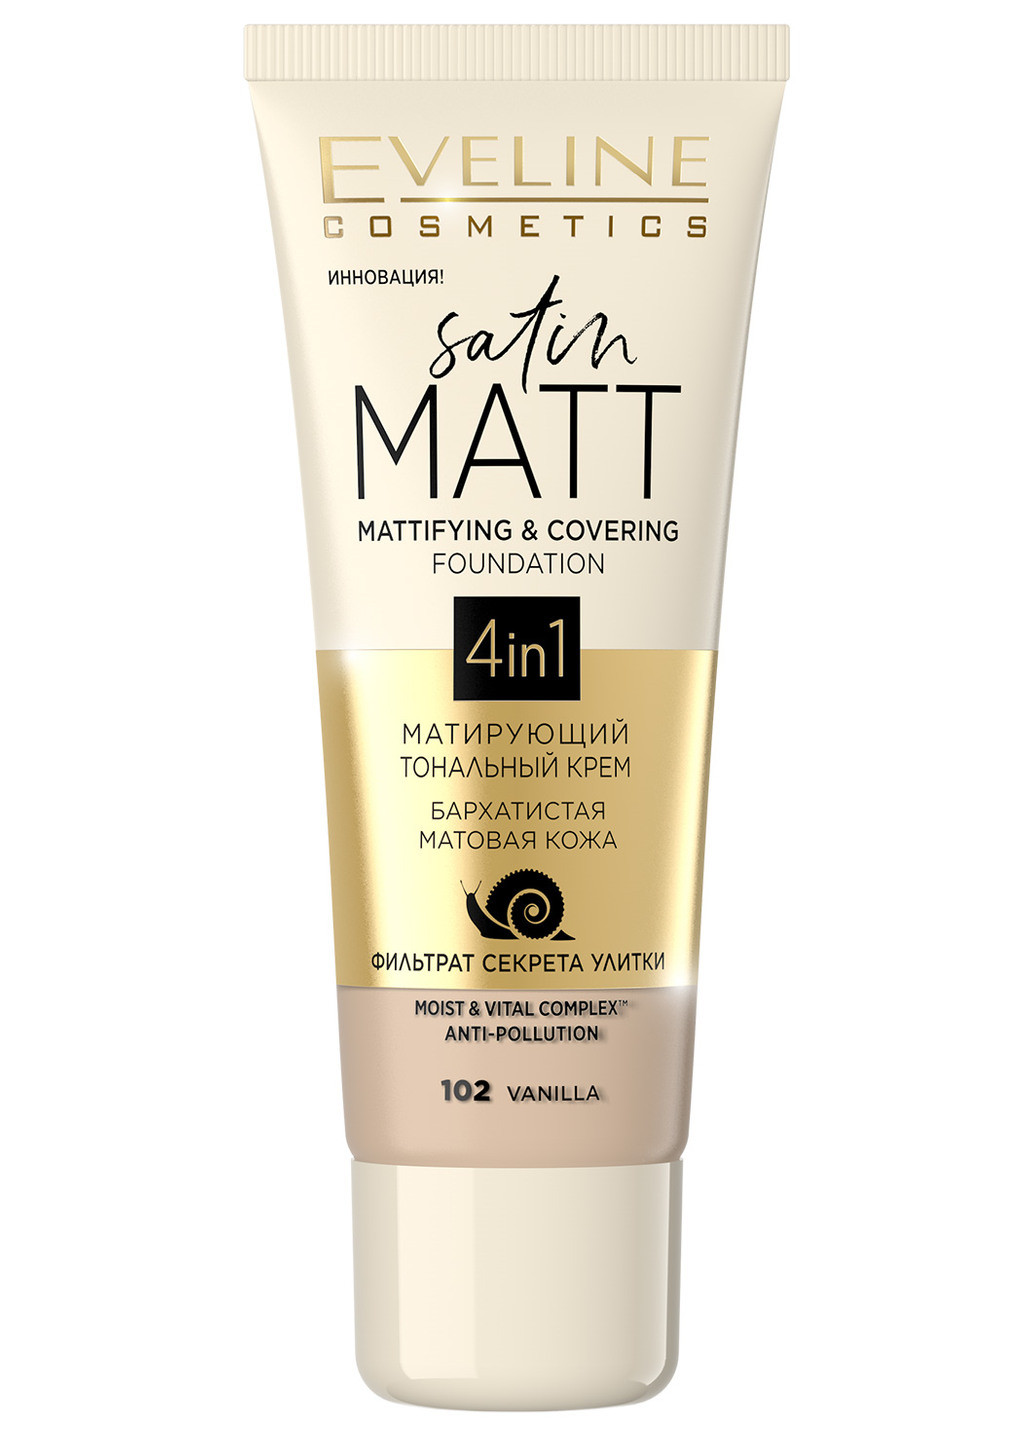 Матирующий тональный крем для лица Satin Matt Mattifying & Covering Foundation 4in1 №102 Vanilla Eveline Cosmetics (190885682)